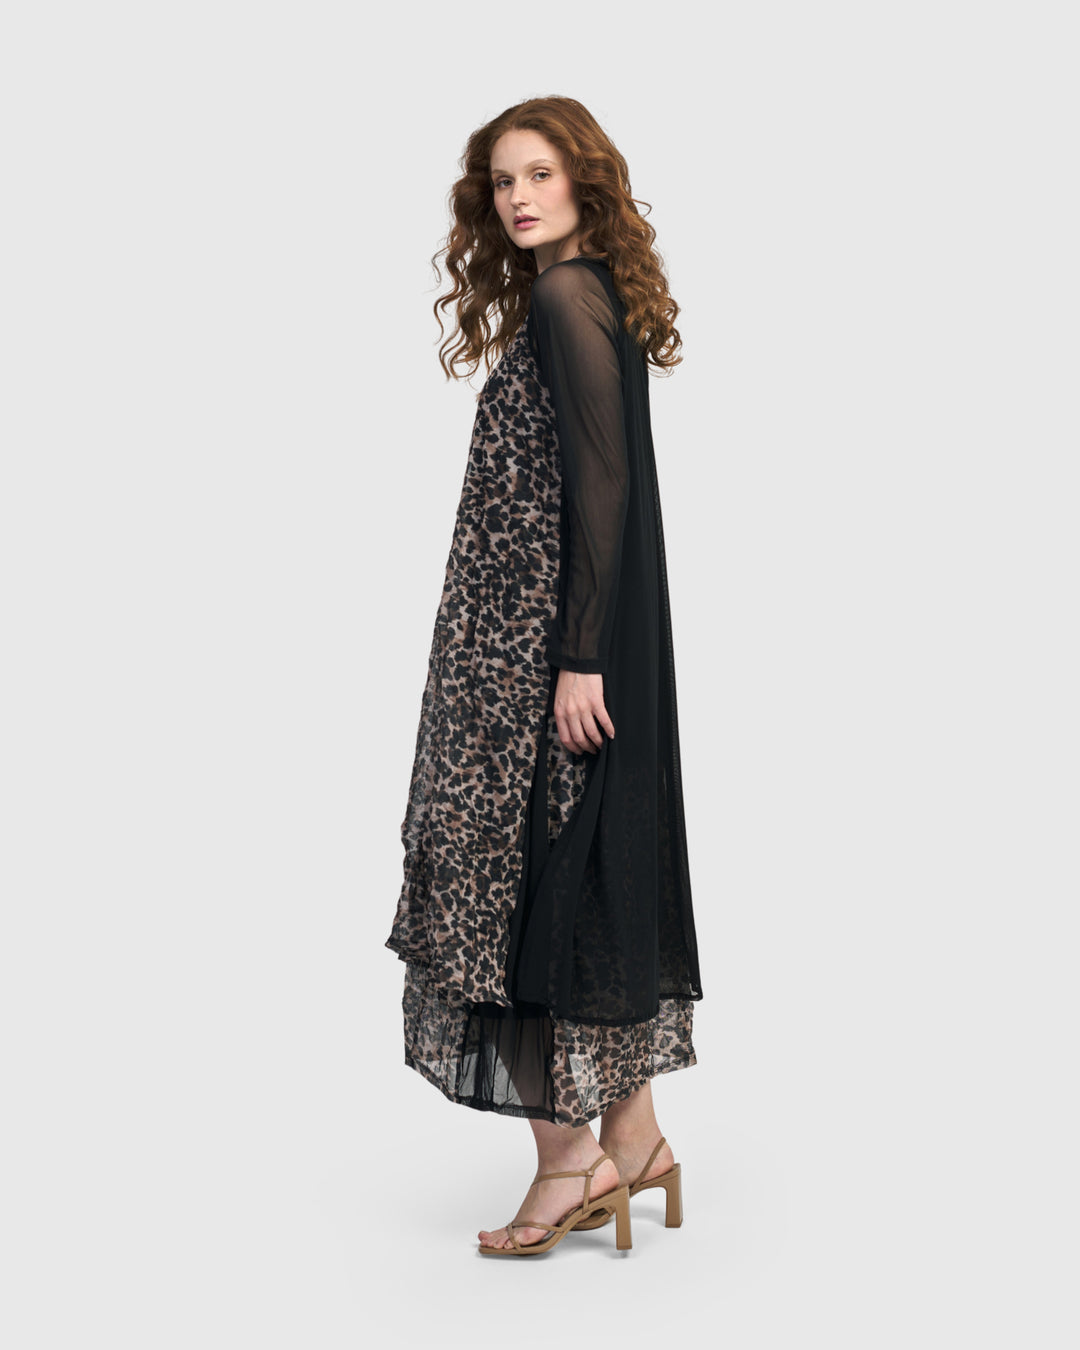 Adriana Midi Skirt, Leopard